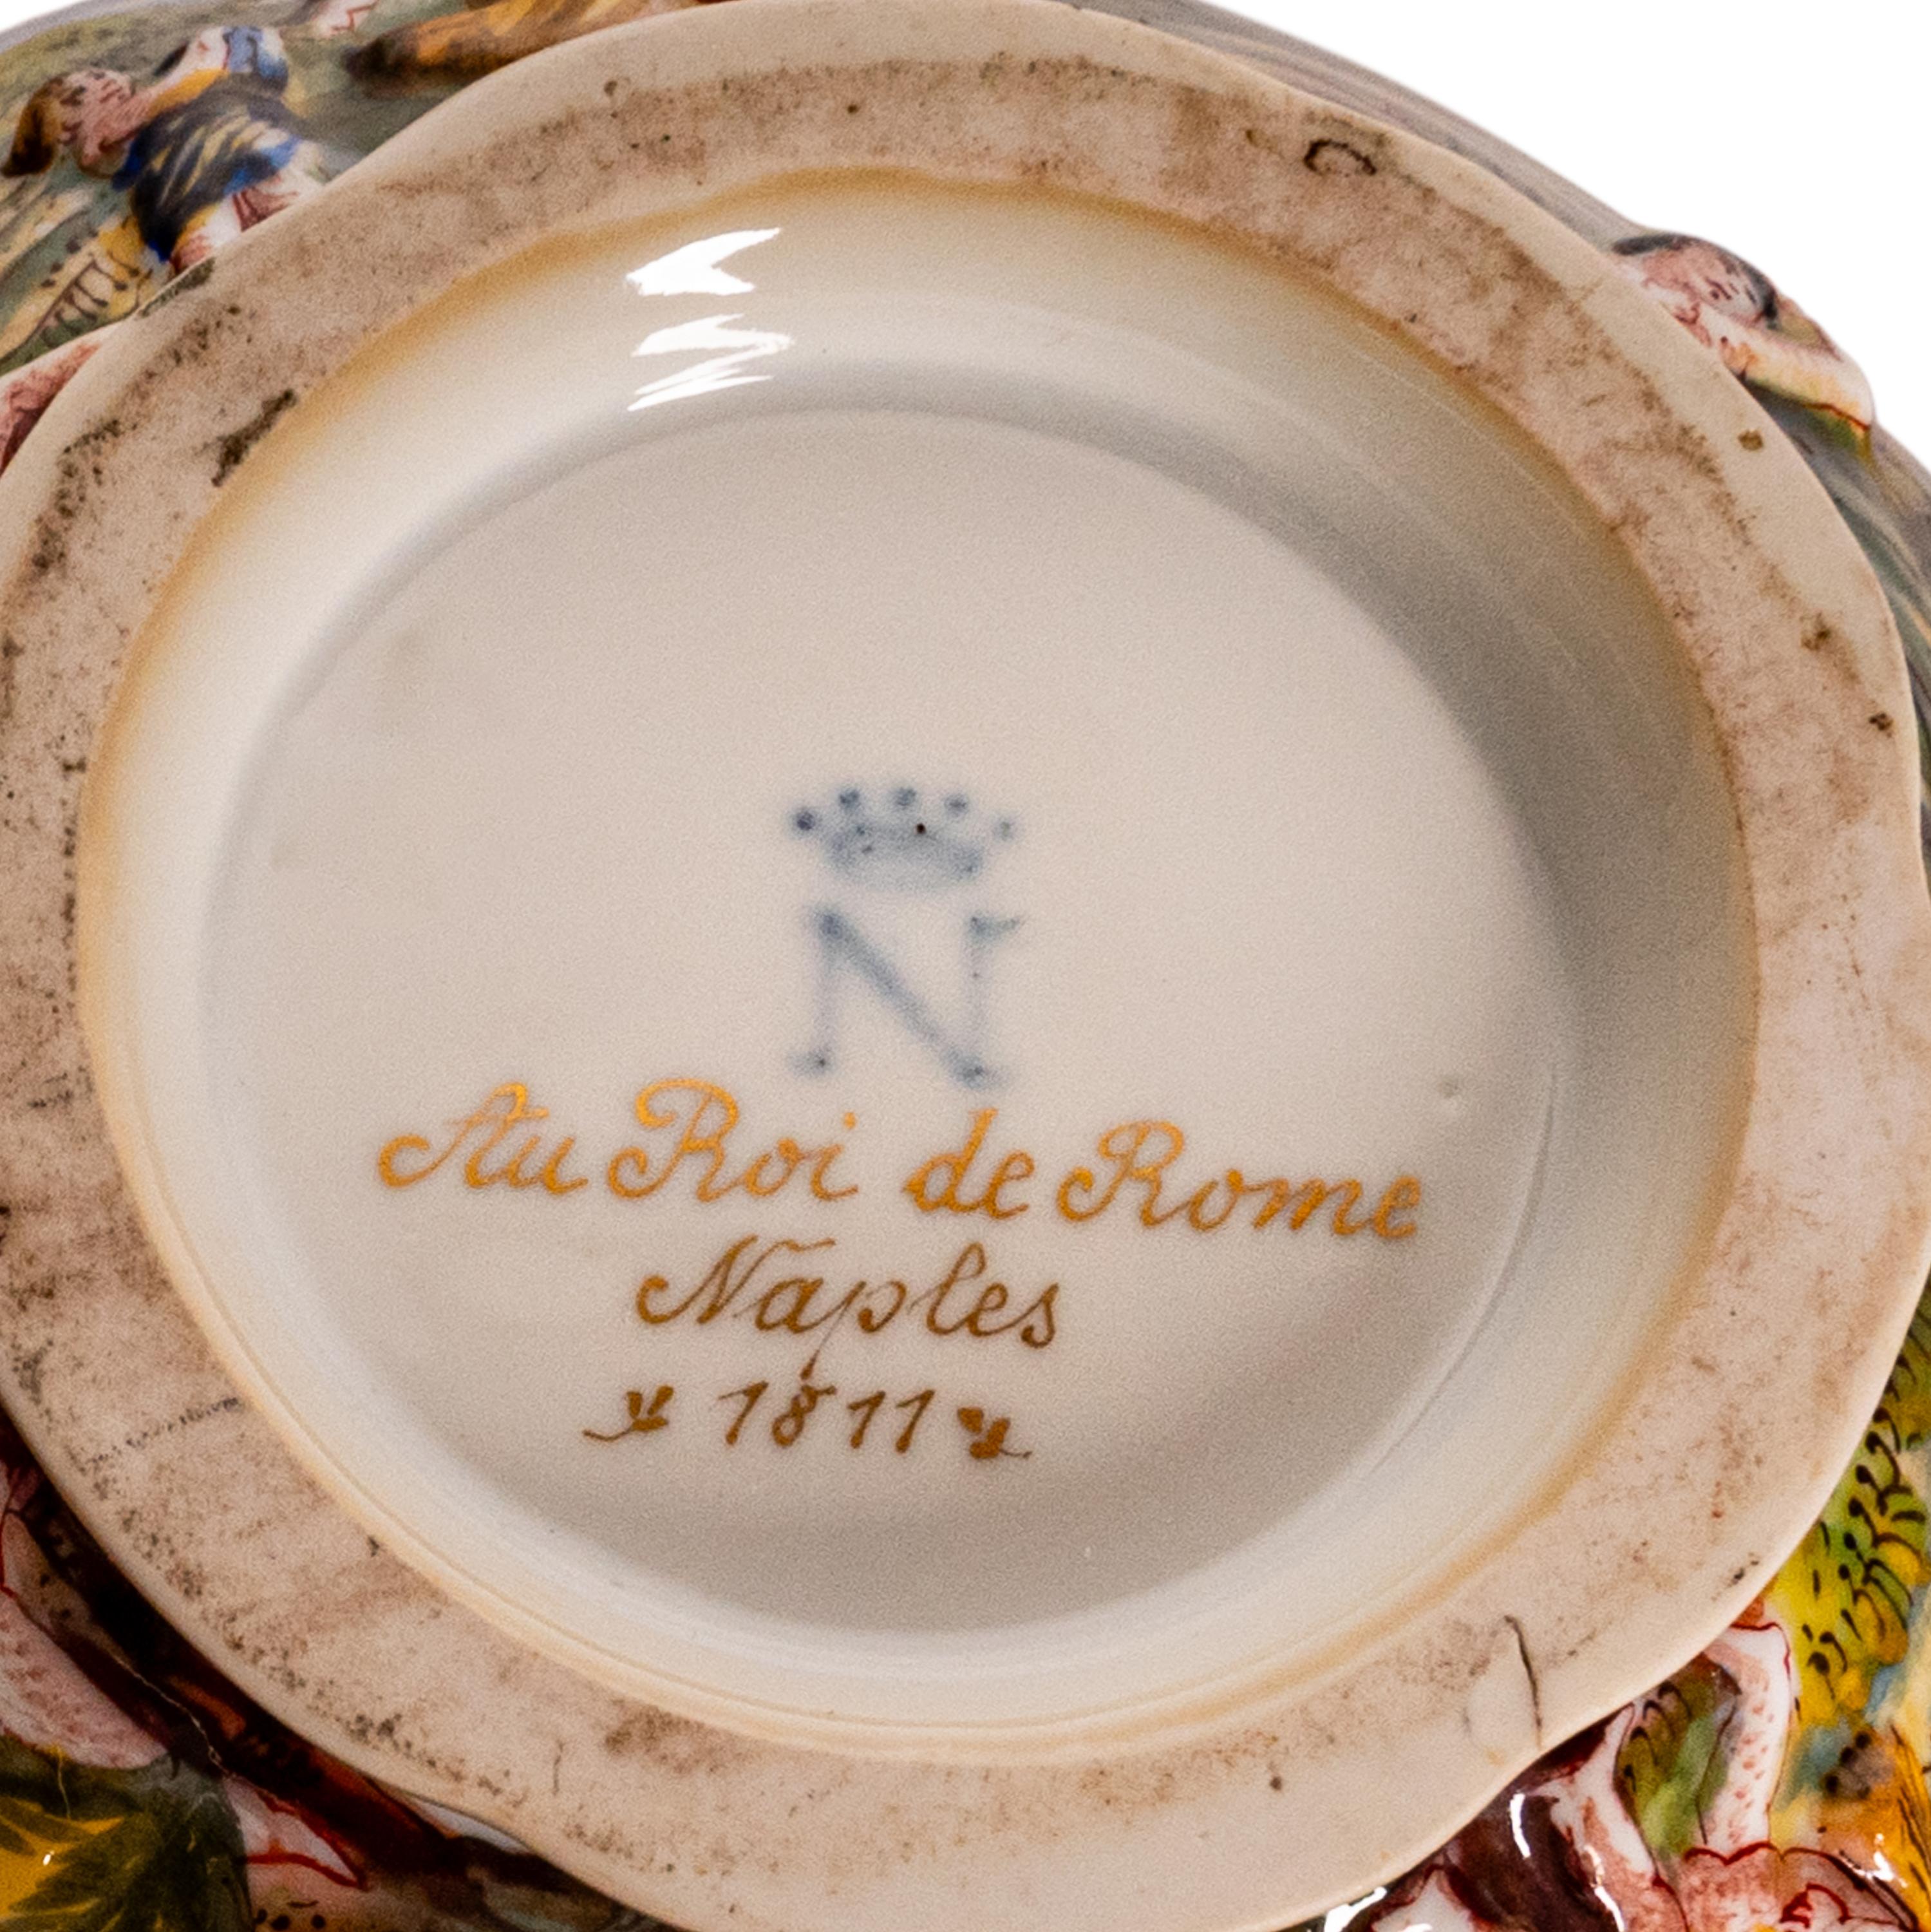 Antique Naples Porcelain 215 Piece Dinner & Tea Service Napoleon Au Roi de Rome For Sale 13